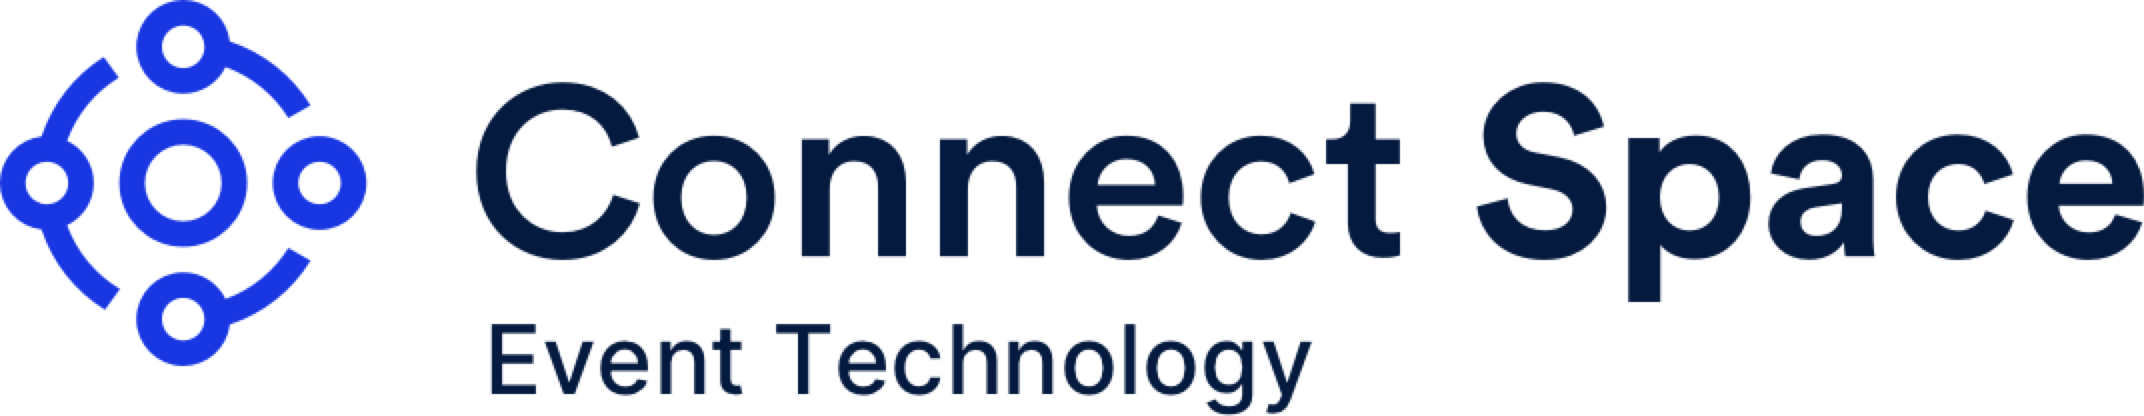 CS Logo W Event Technology